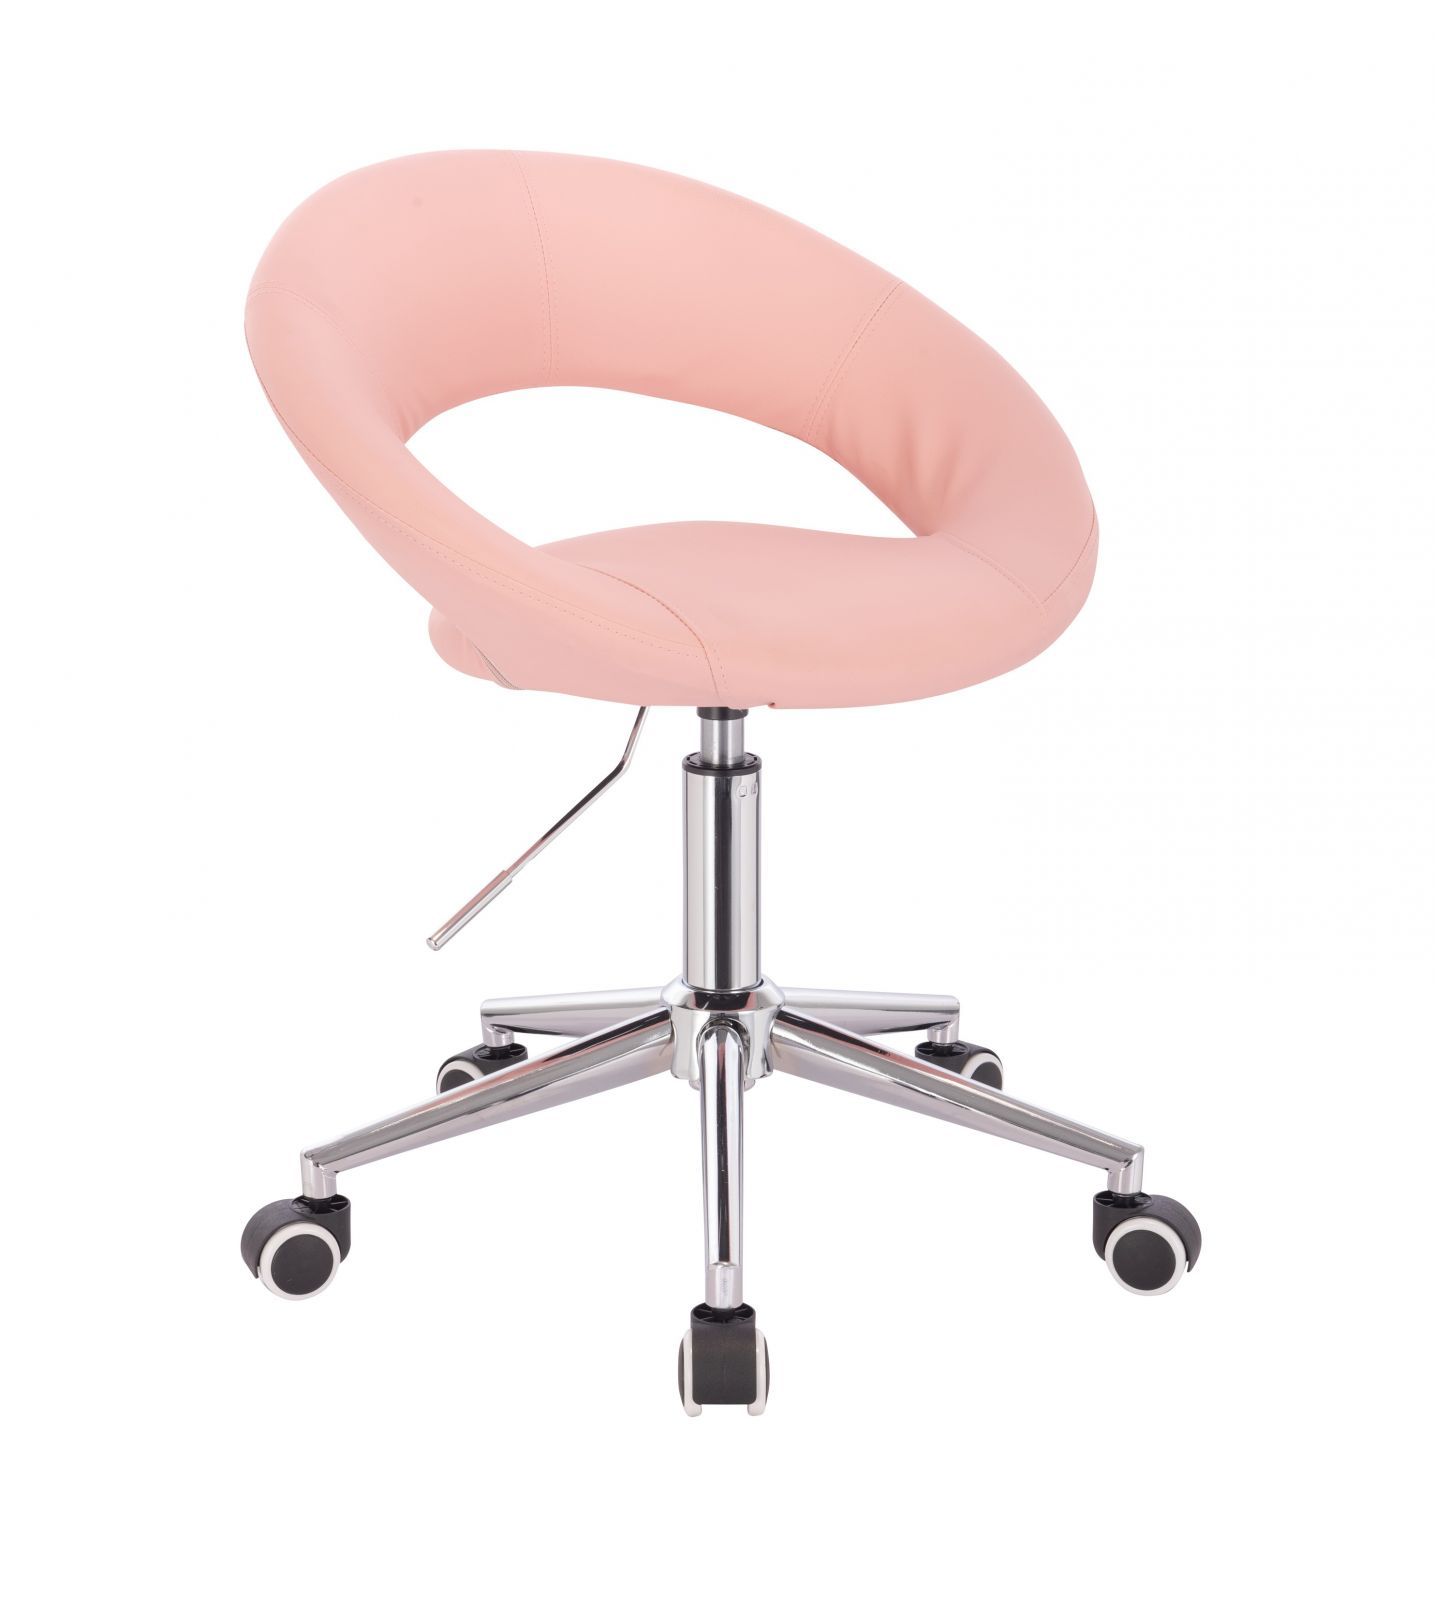  Židle NAPOLI na stříbrné podstavě s kolečky - růžová